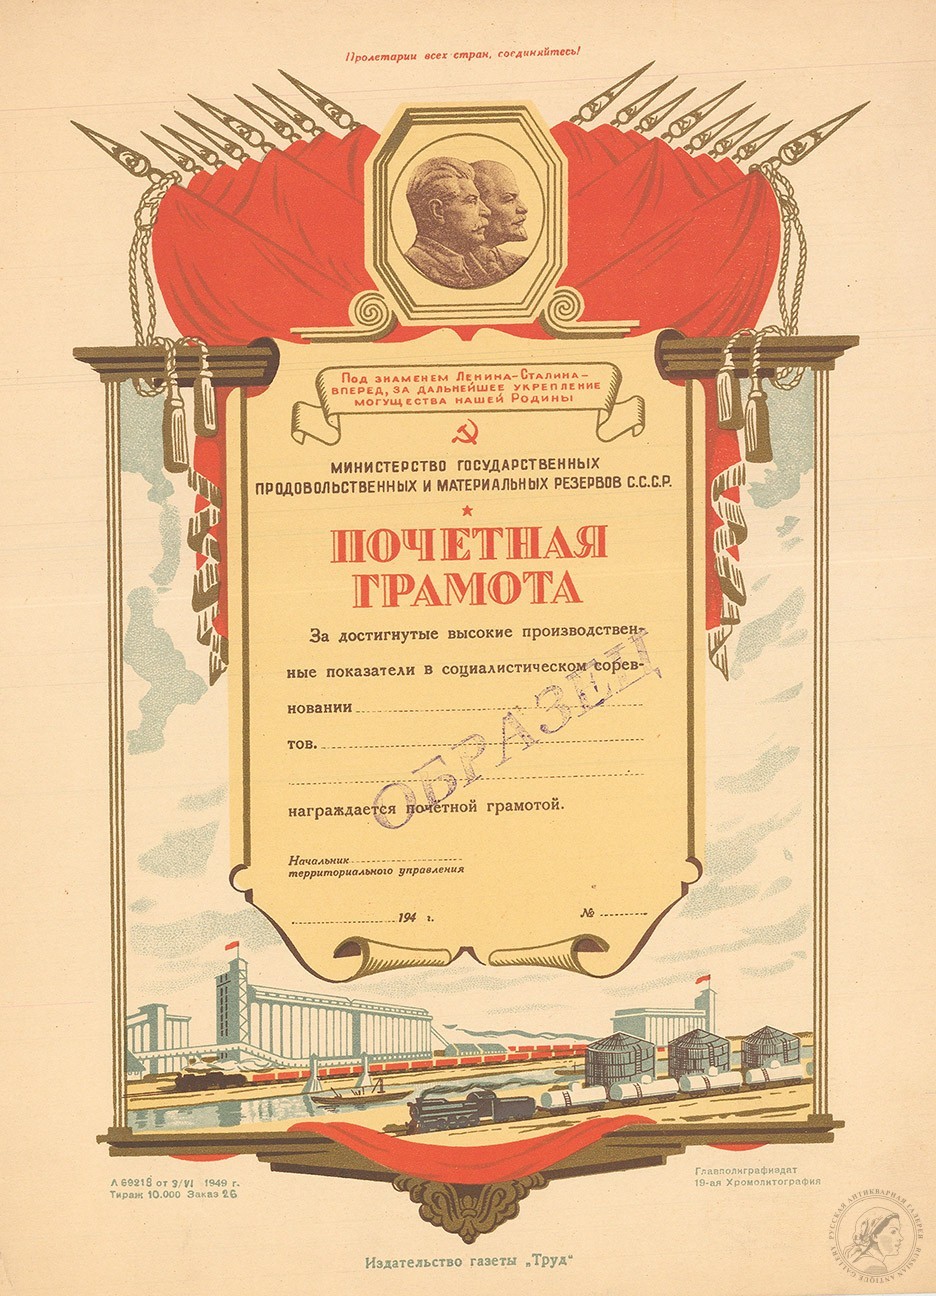 Почетная грамота Министерства Государственных продовольственных и материальных резервов СССР